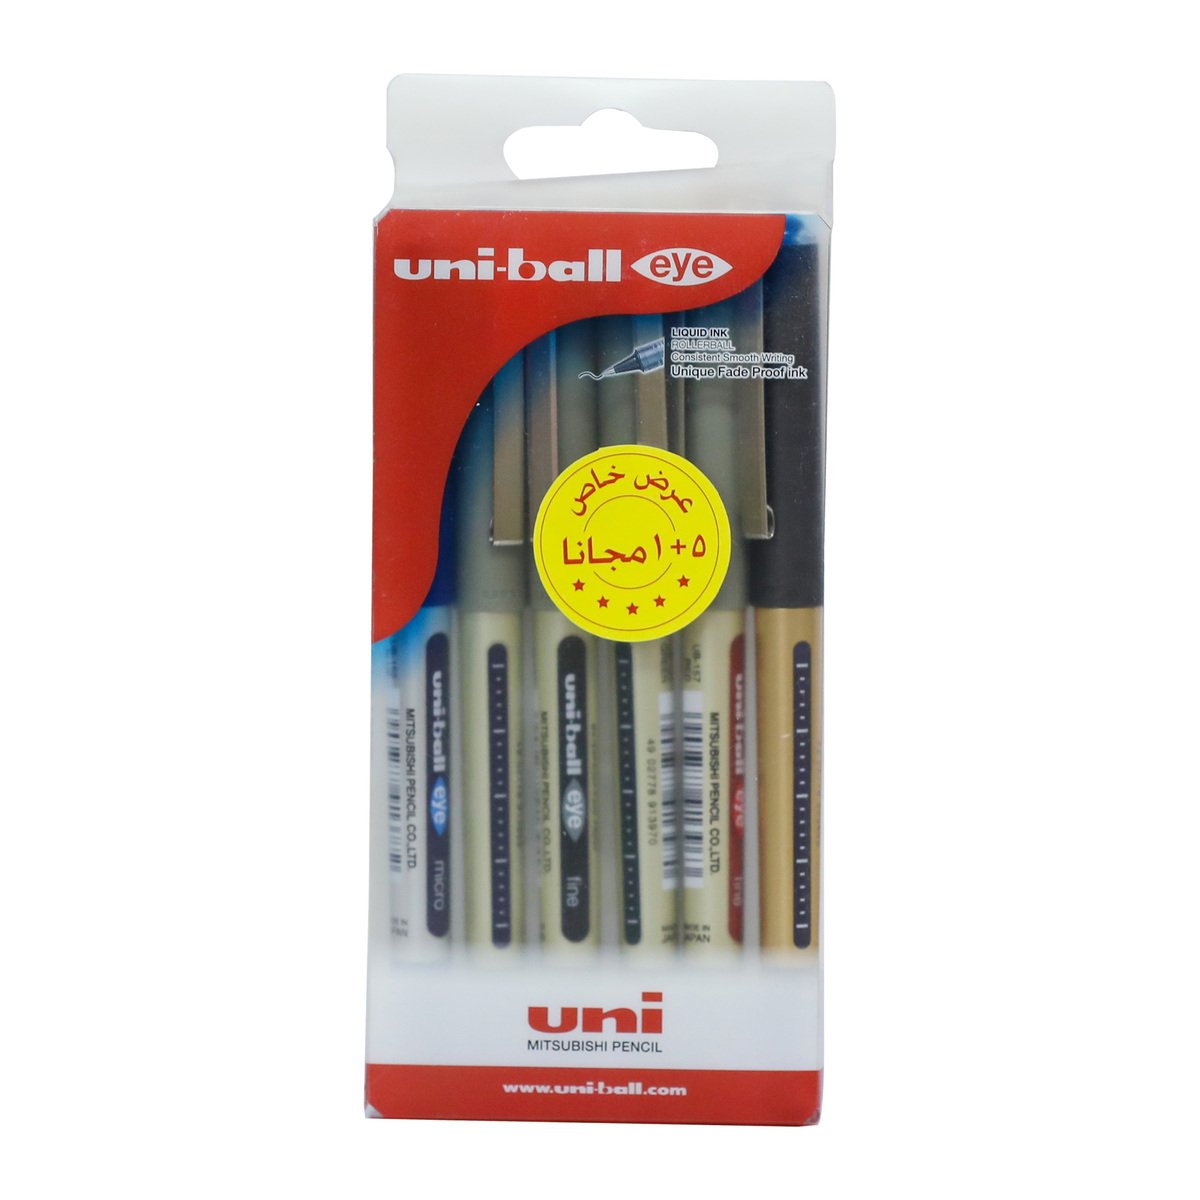 Uni-Ball Eye Roller Ballpoint Pen UB157-06C